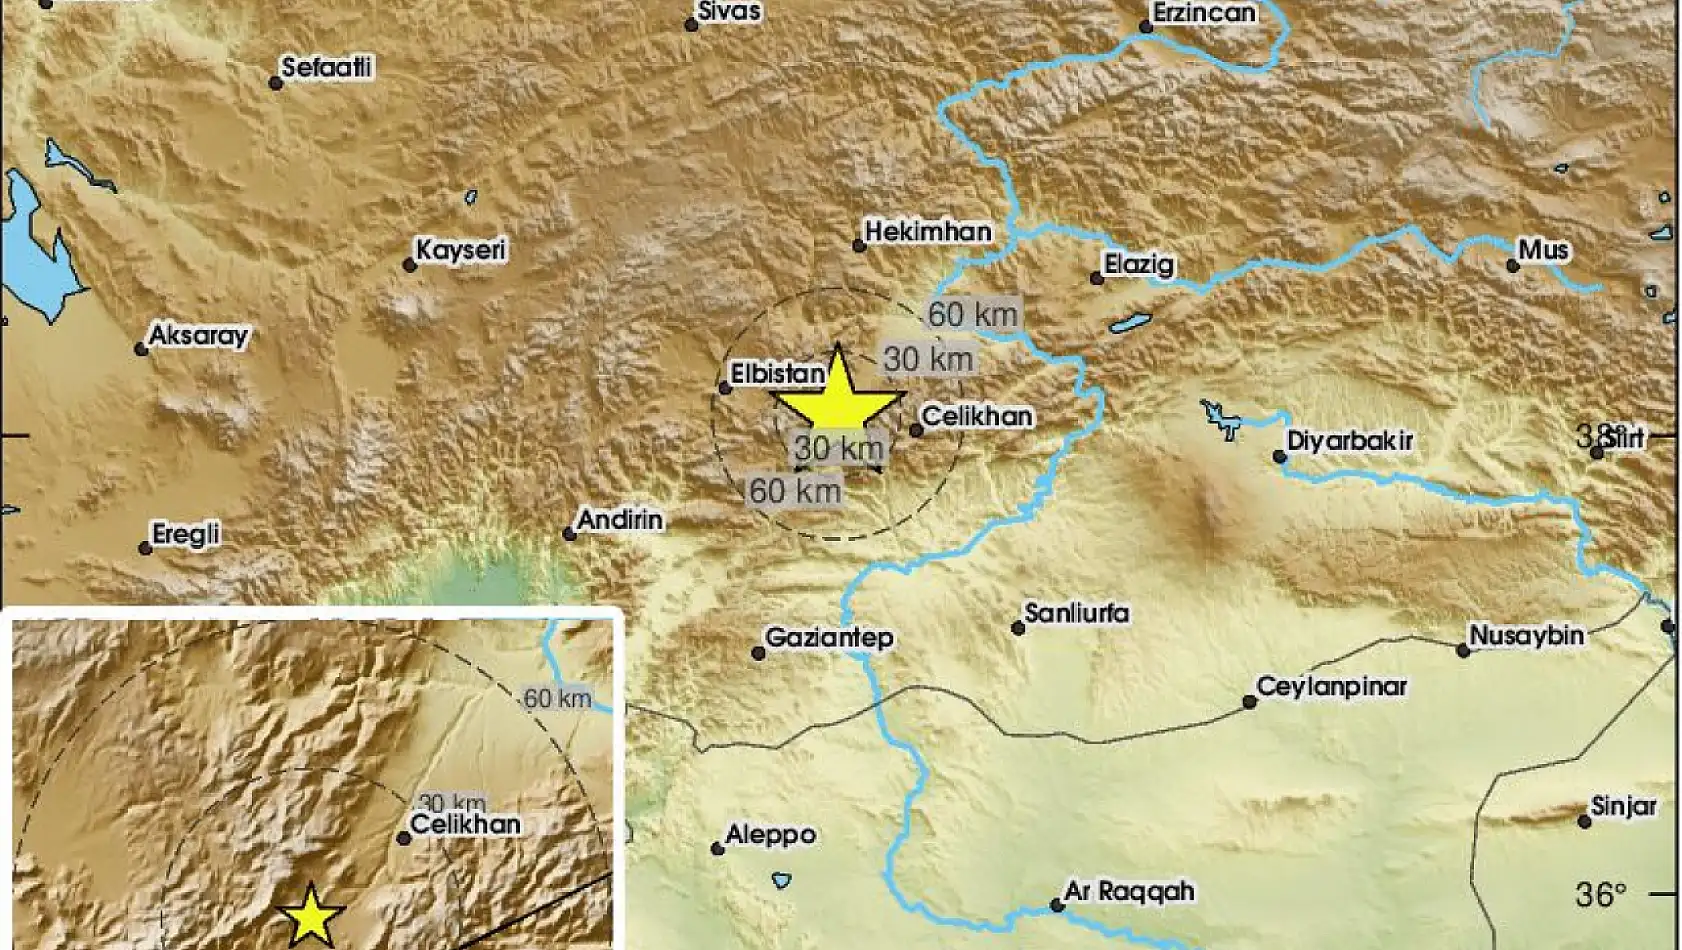 Uzmanlar Malatya'da depremin nerede olduğuna karar veremedi!?